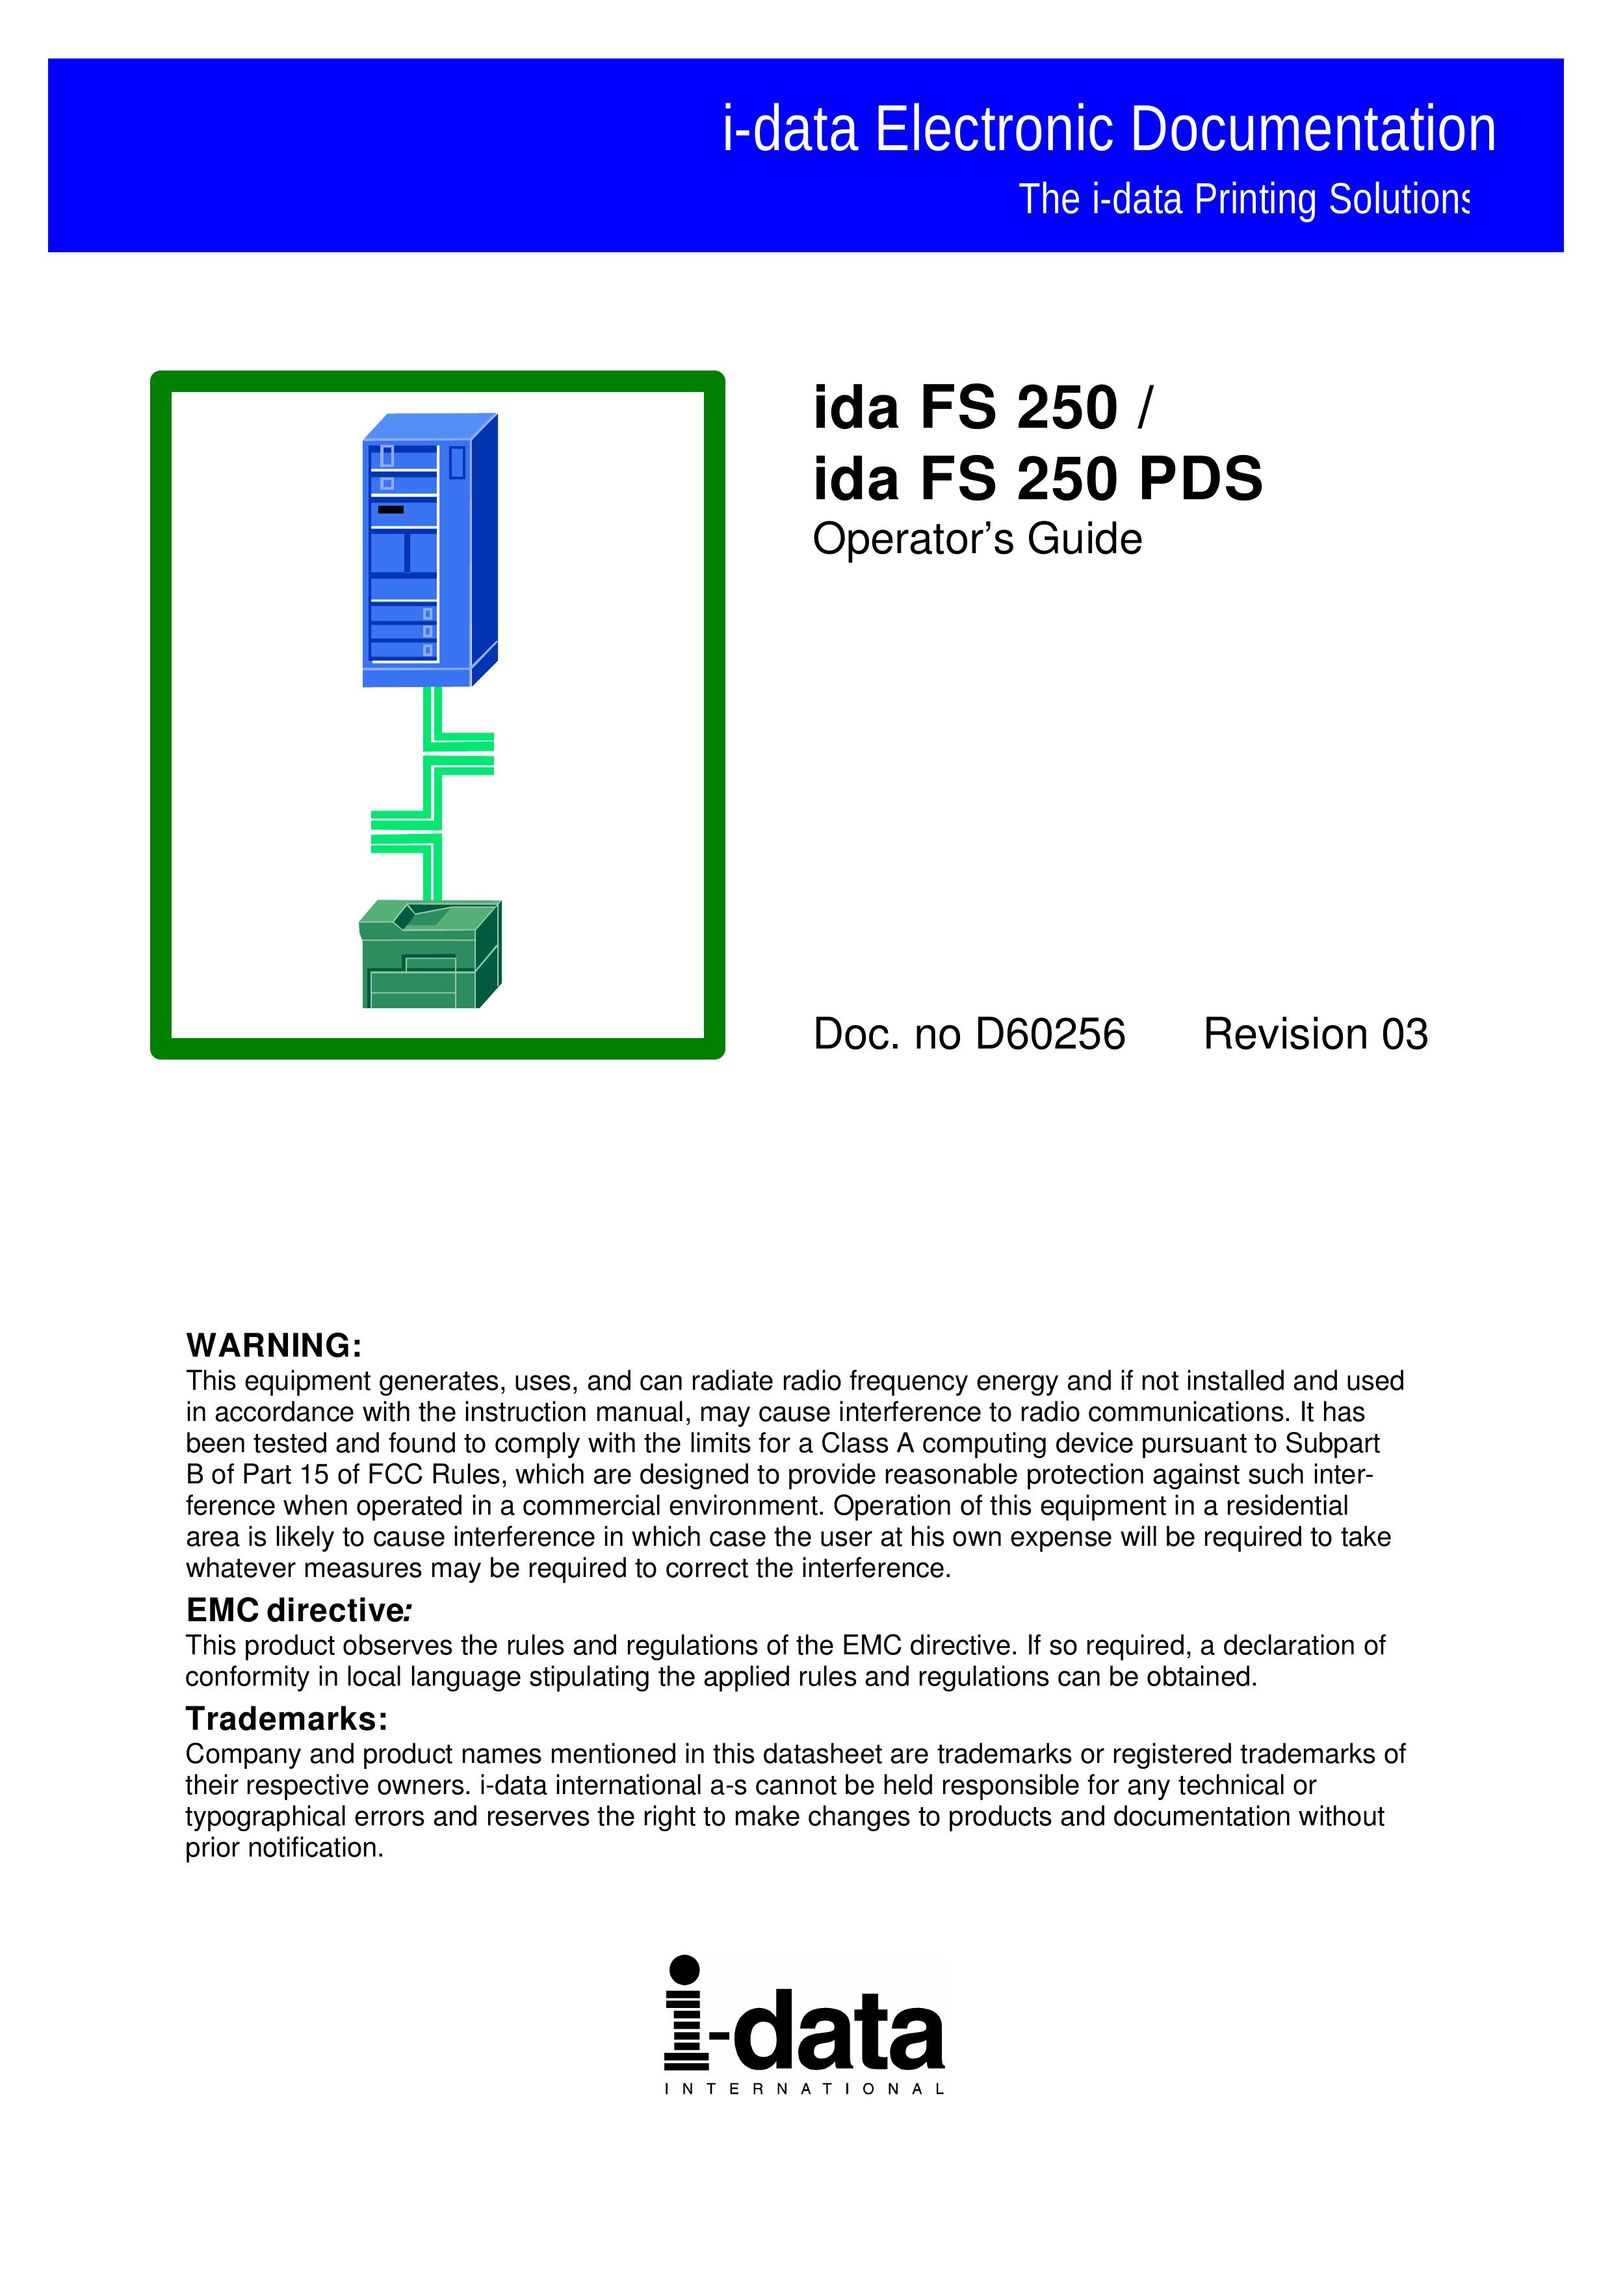 I-Data FS 250 Portable Media Storage User Manual